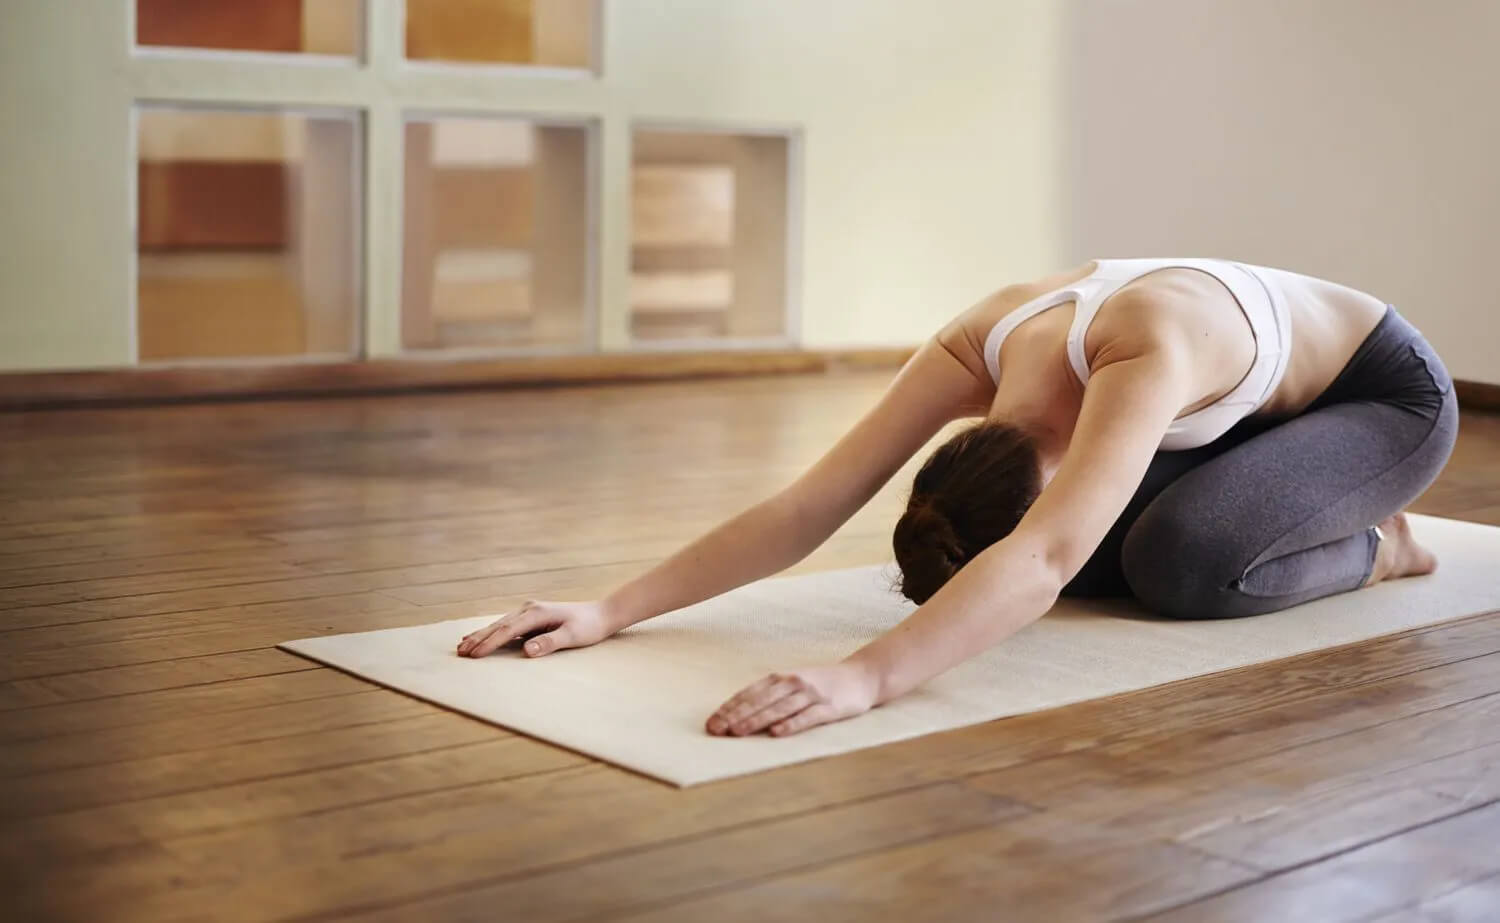 Khi tập yoga tại nhà, người mới tập dễ nản lòng.